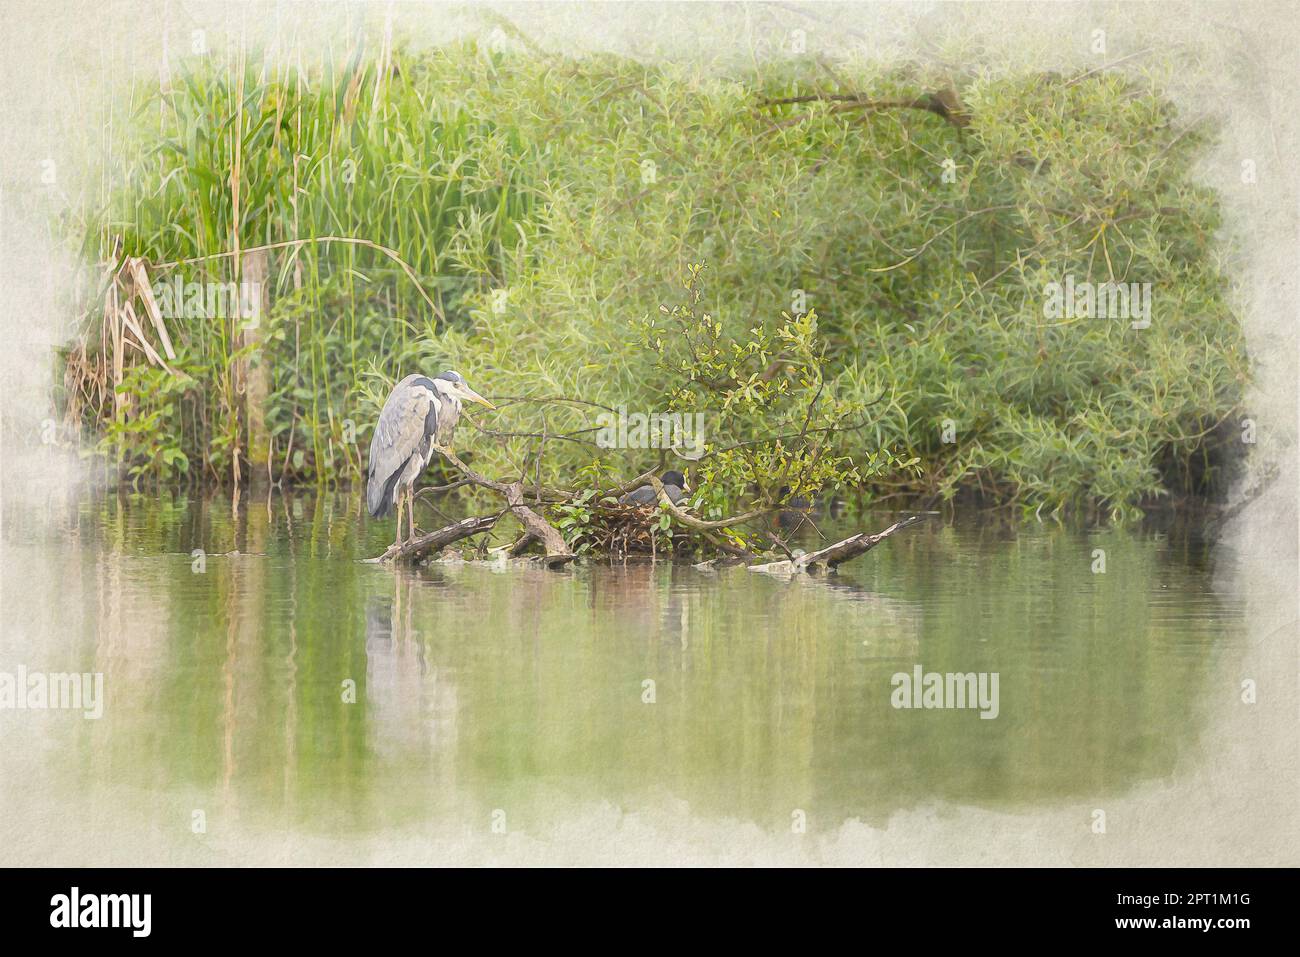 Un dipinto digitale ad acquerello dell'Heron grigio predatore a zampe lunghe, Ardea cinerea della famiglia Ardeidae, arroccato su un albero su un lago nel Foto Stock